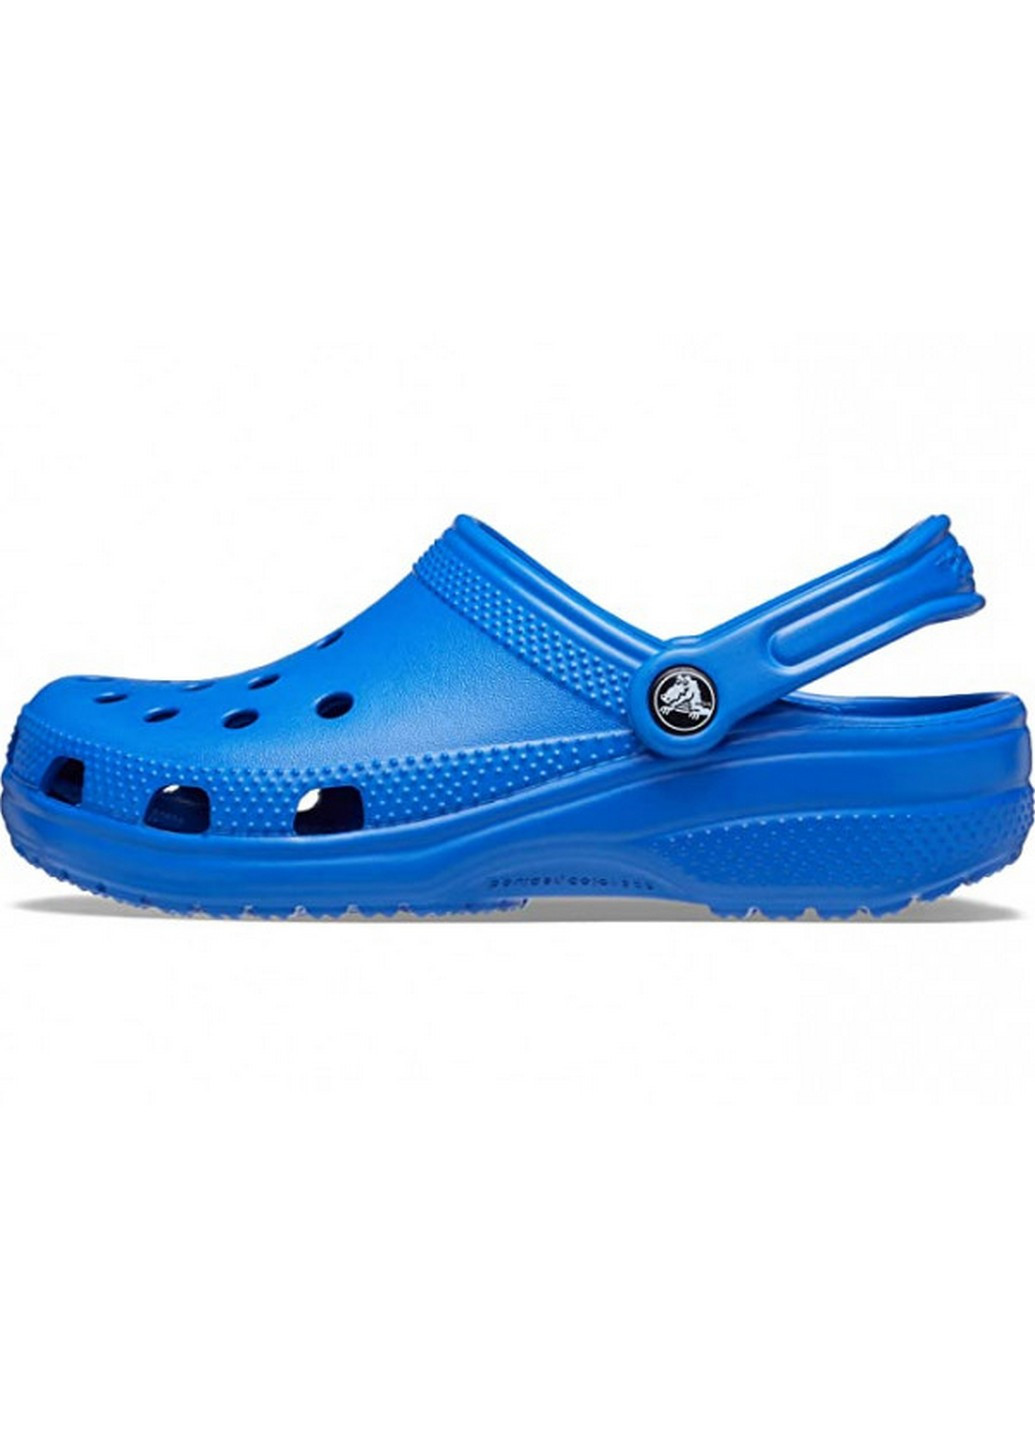 Синие кроксы сабо Crocs